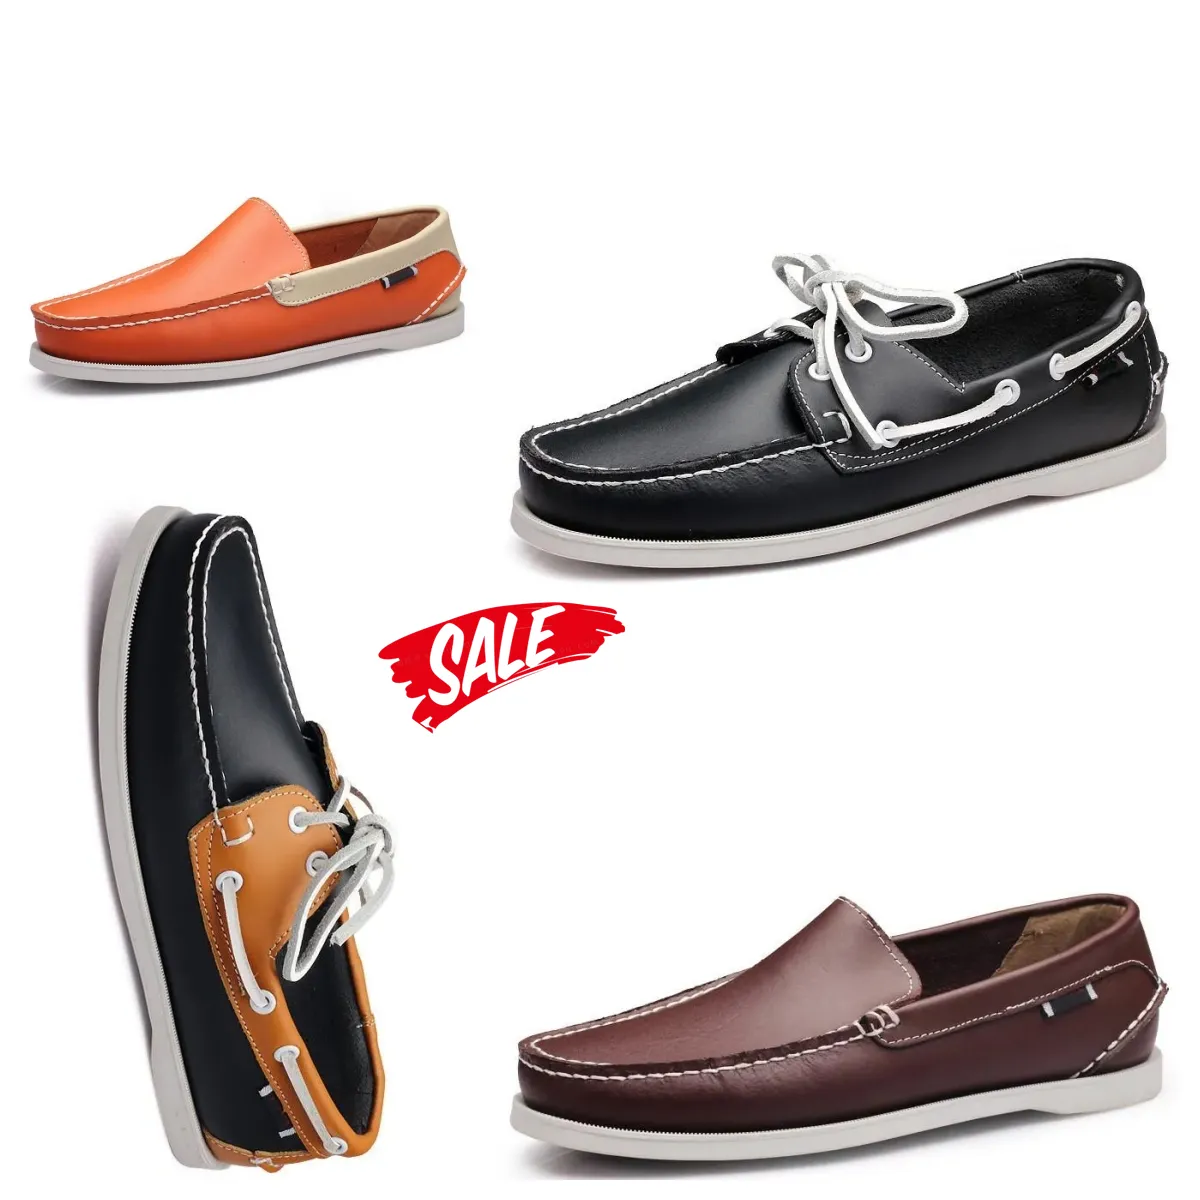 Novas modas Vários estilos disponíveis Sapatos de vela de sapatos de velejamento de sapatos casuais, tênis de couro, tênis tênis Gai tamanho 38-45